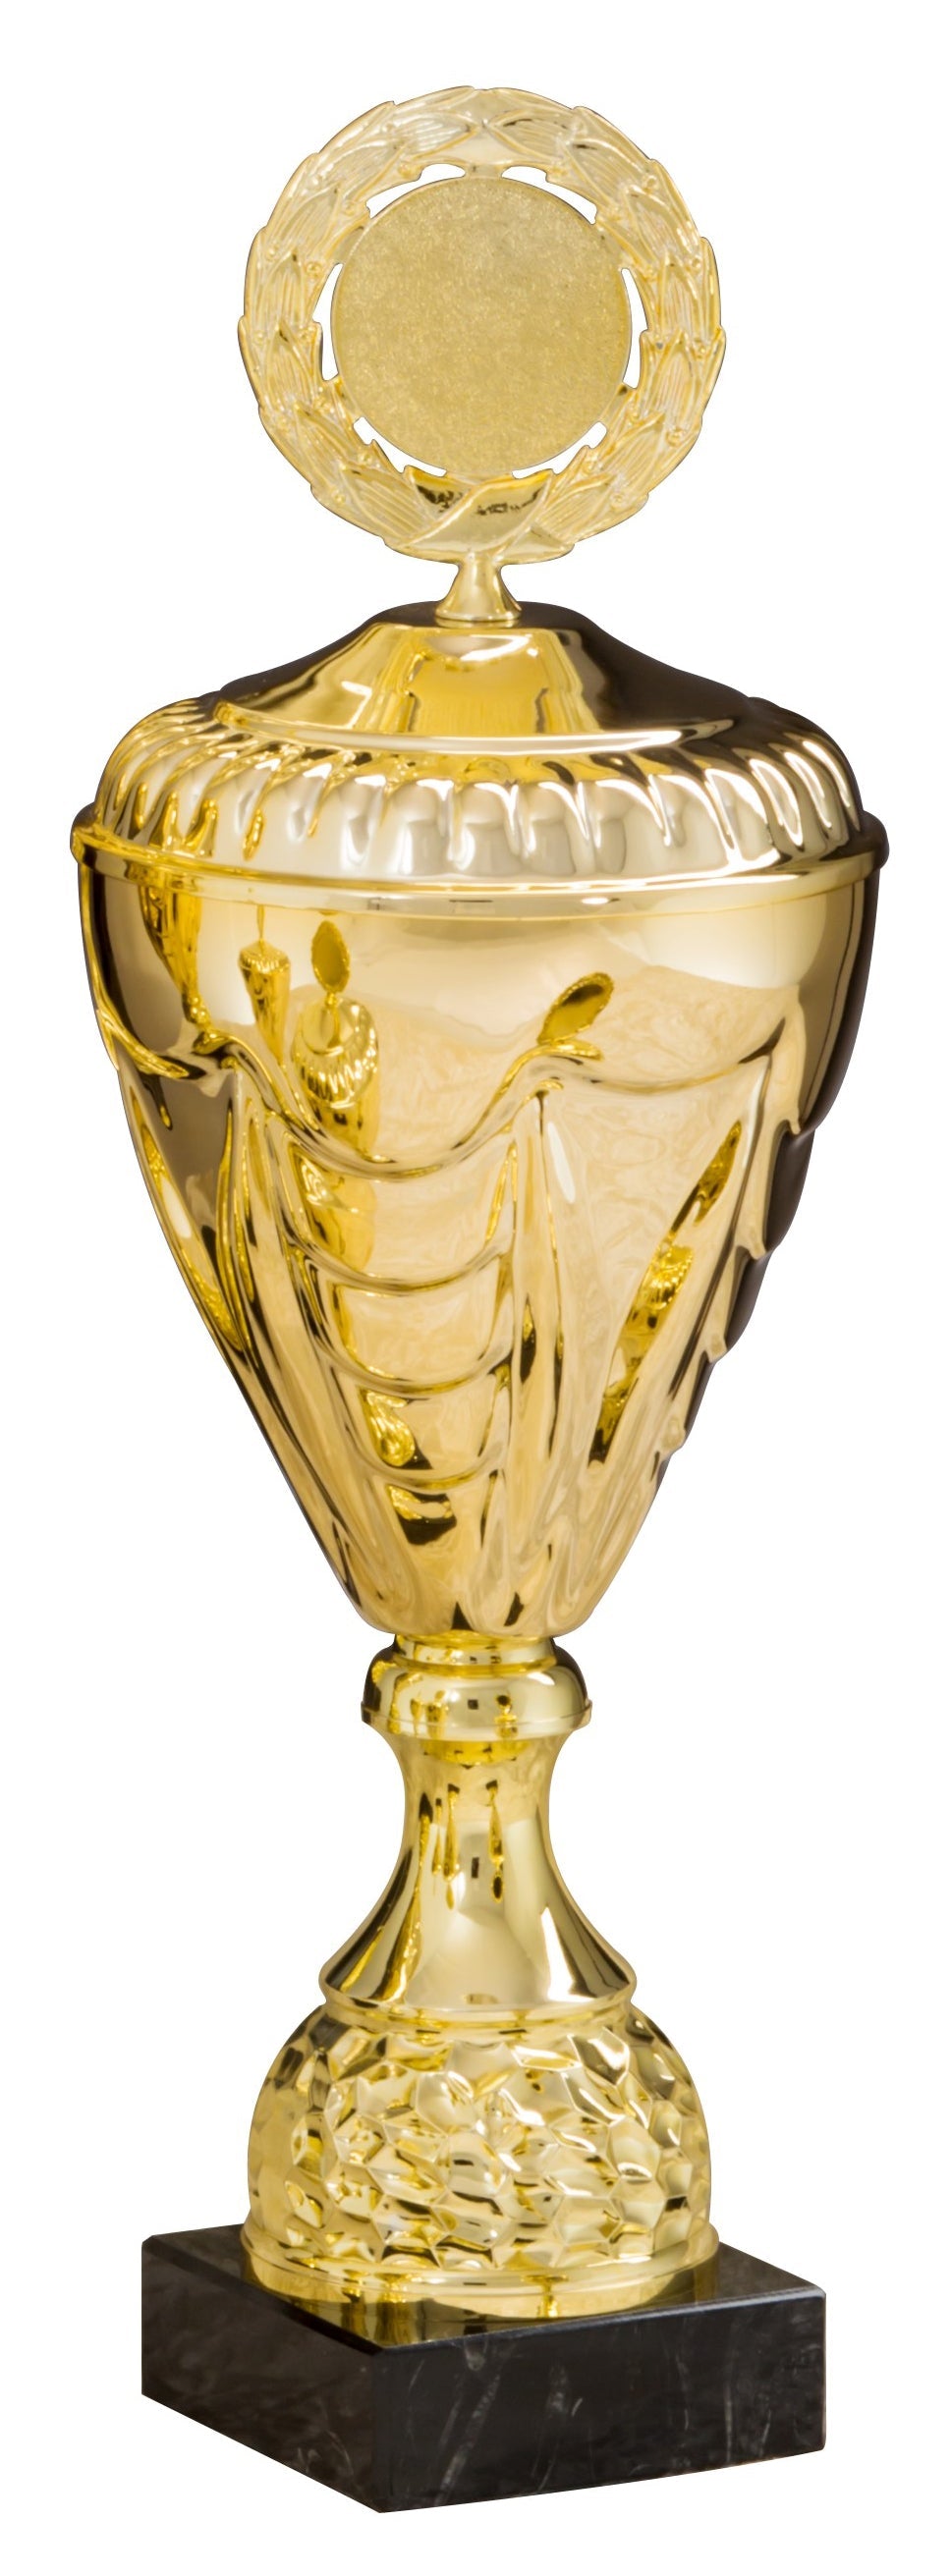 Ein Pokal Kirchheim unter Teck 5-er Pokalserie 275 mm – 444 mm PK757870-5-E50 mit kunstvollem Design, montiert auf einem schwarzen Sockel und gekrönt mit einer runden Emblemplatte, dient als geschätztes Erinnerungsstück.